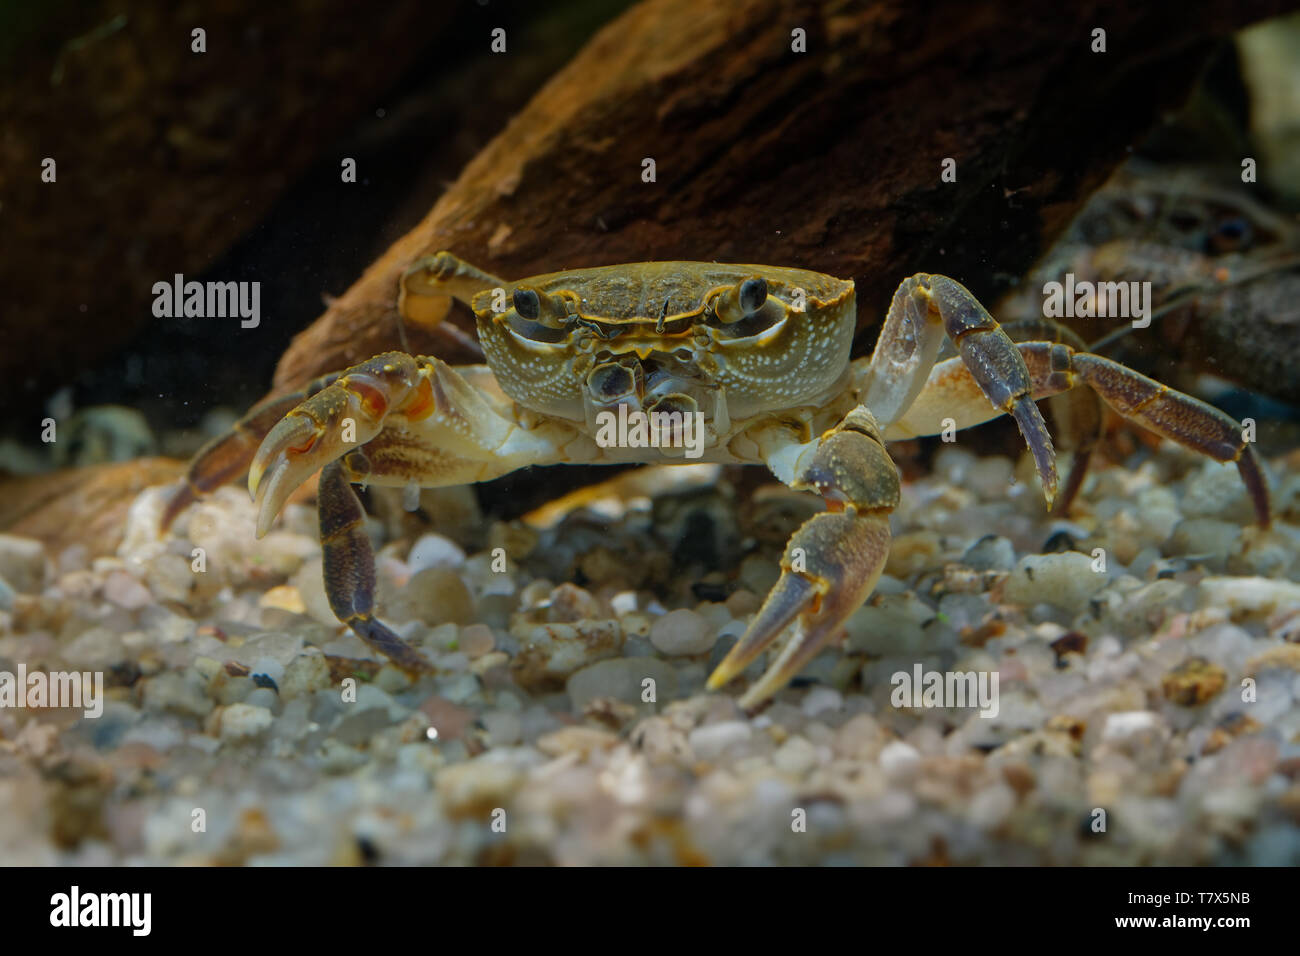 Crabe d'eau douce - Potamon fluviatile vivant dans les ruisseaux, rivières et lacs du sud de l'Europe. Banque D'Images